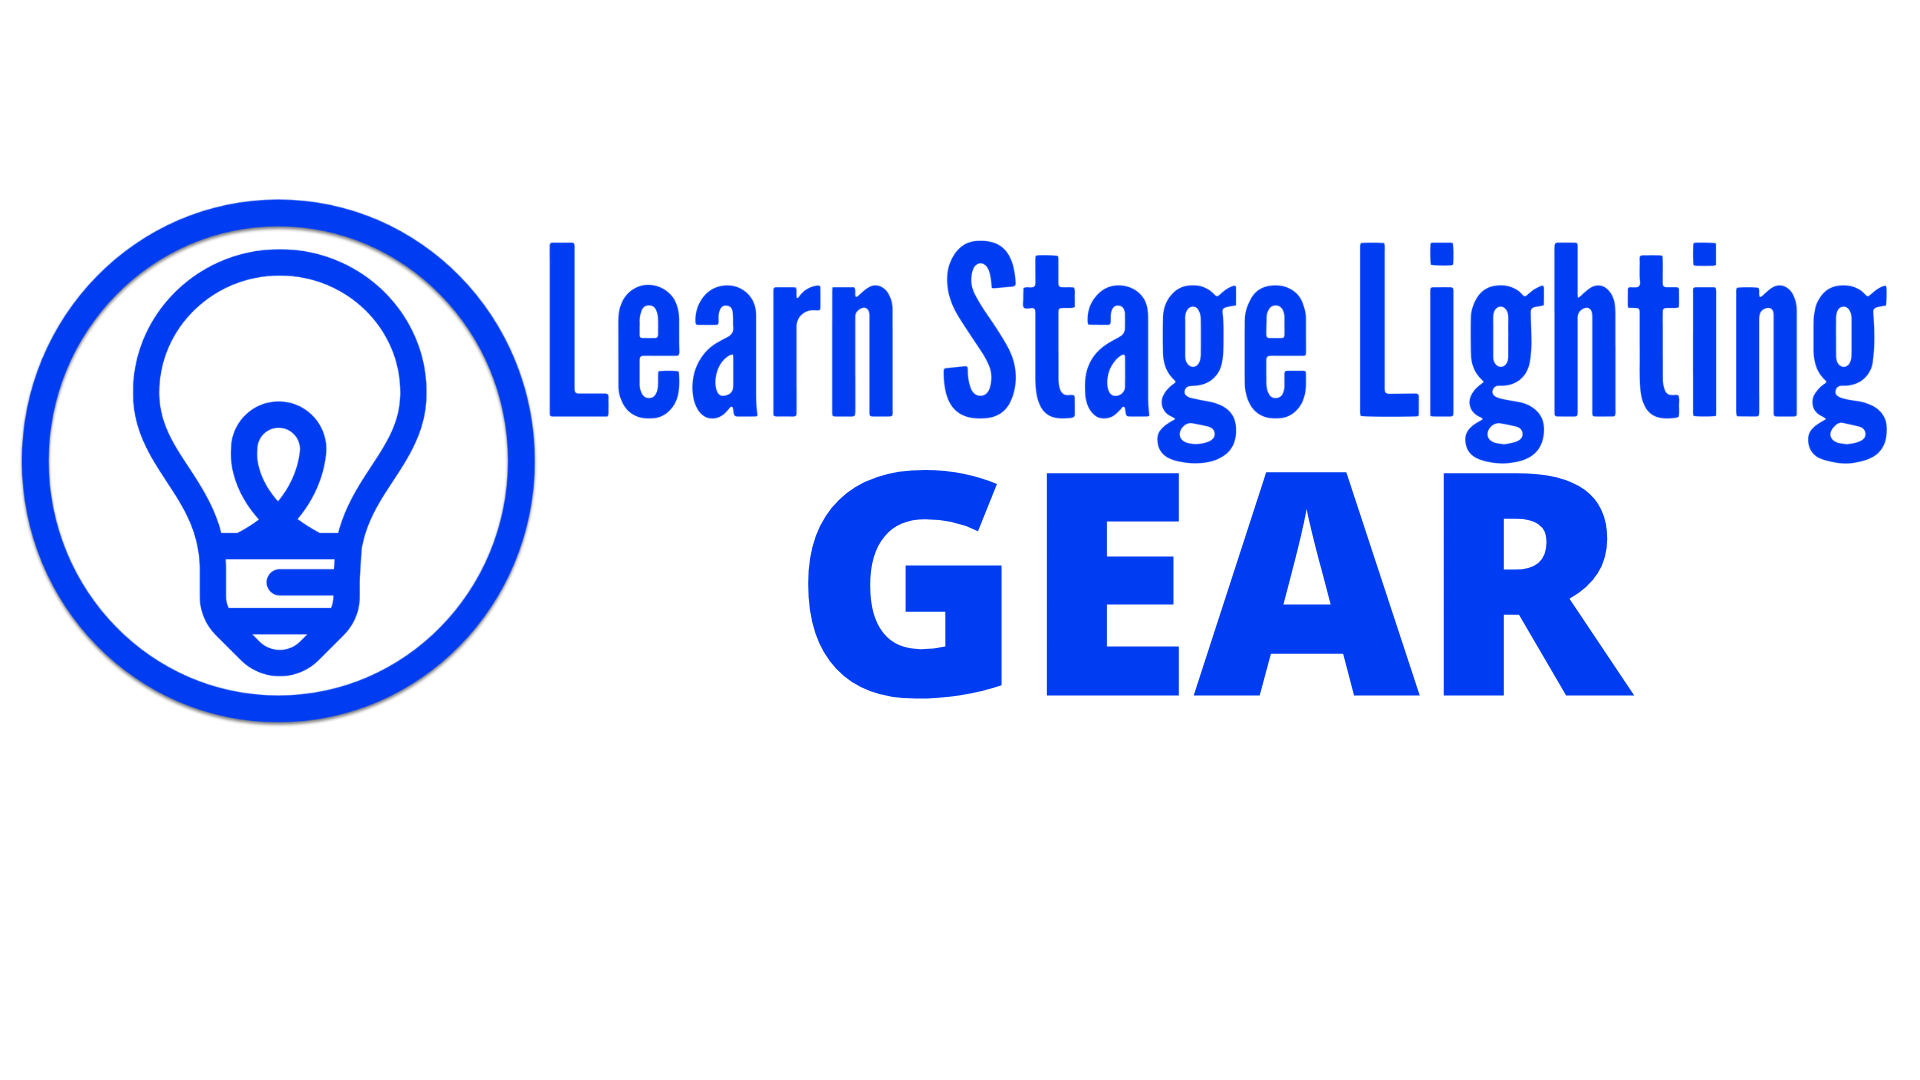 Learn Stage Lighting GEAR